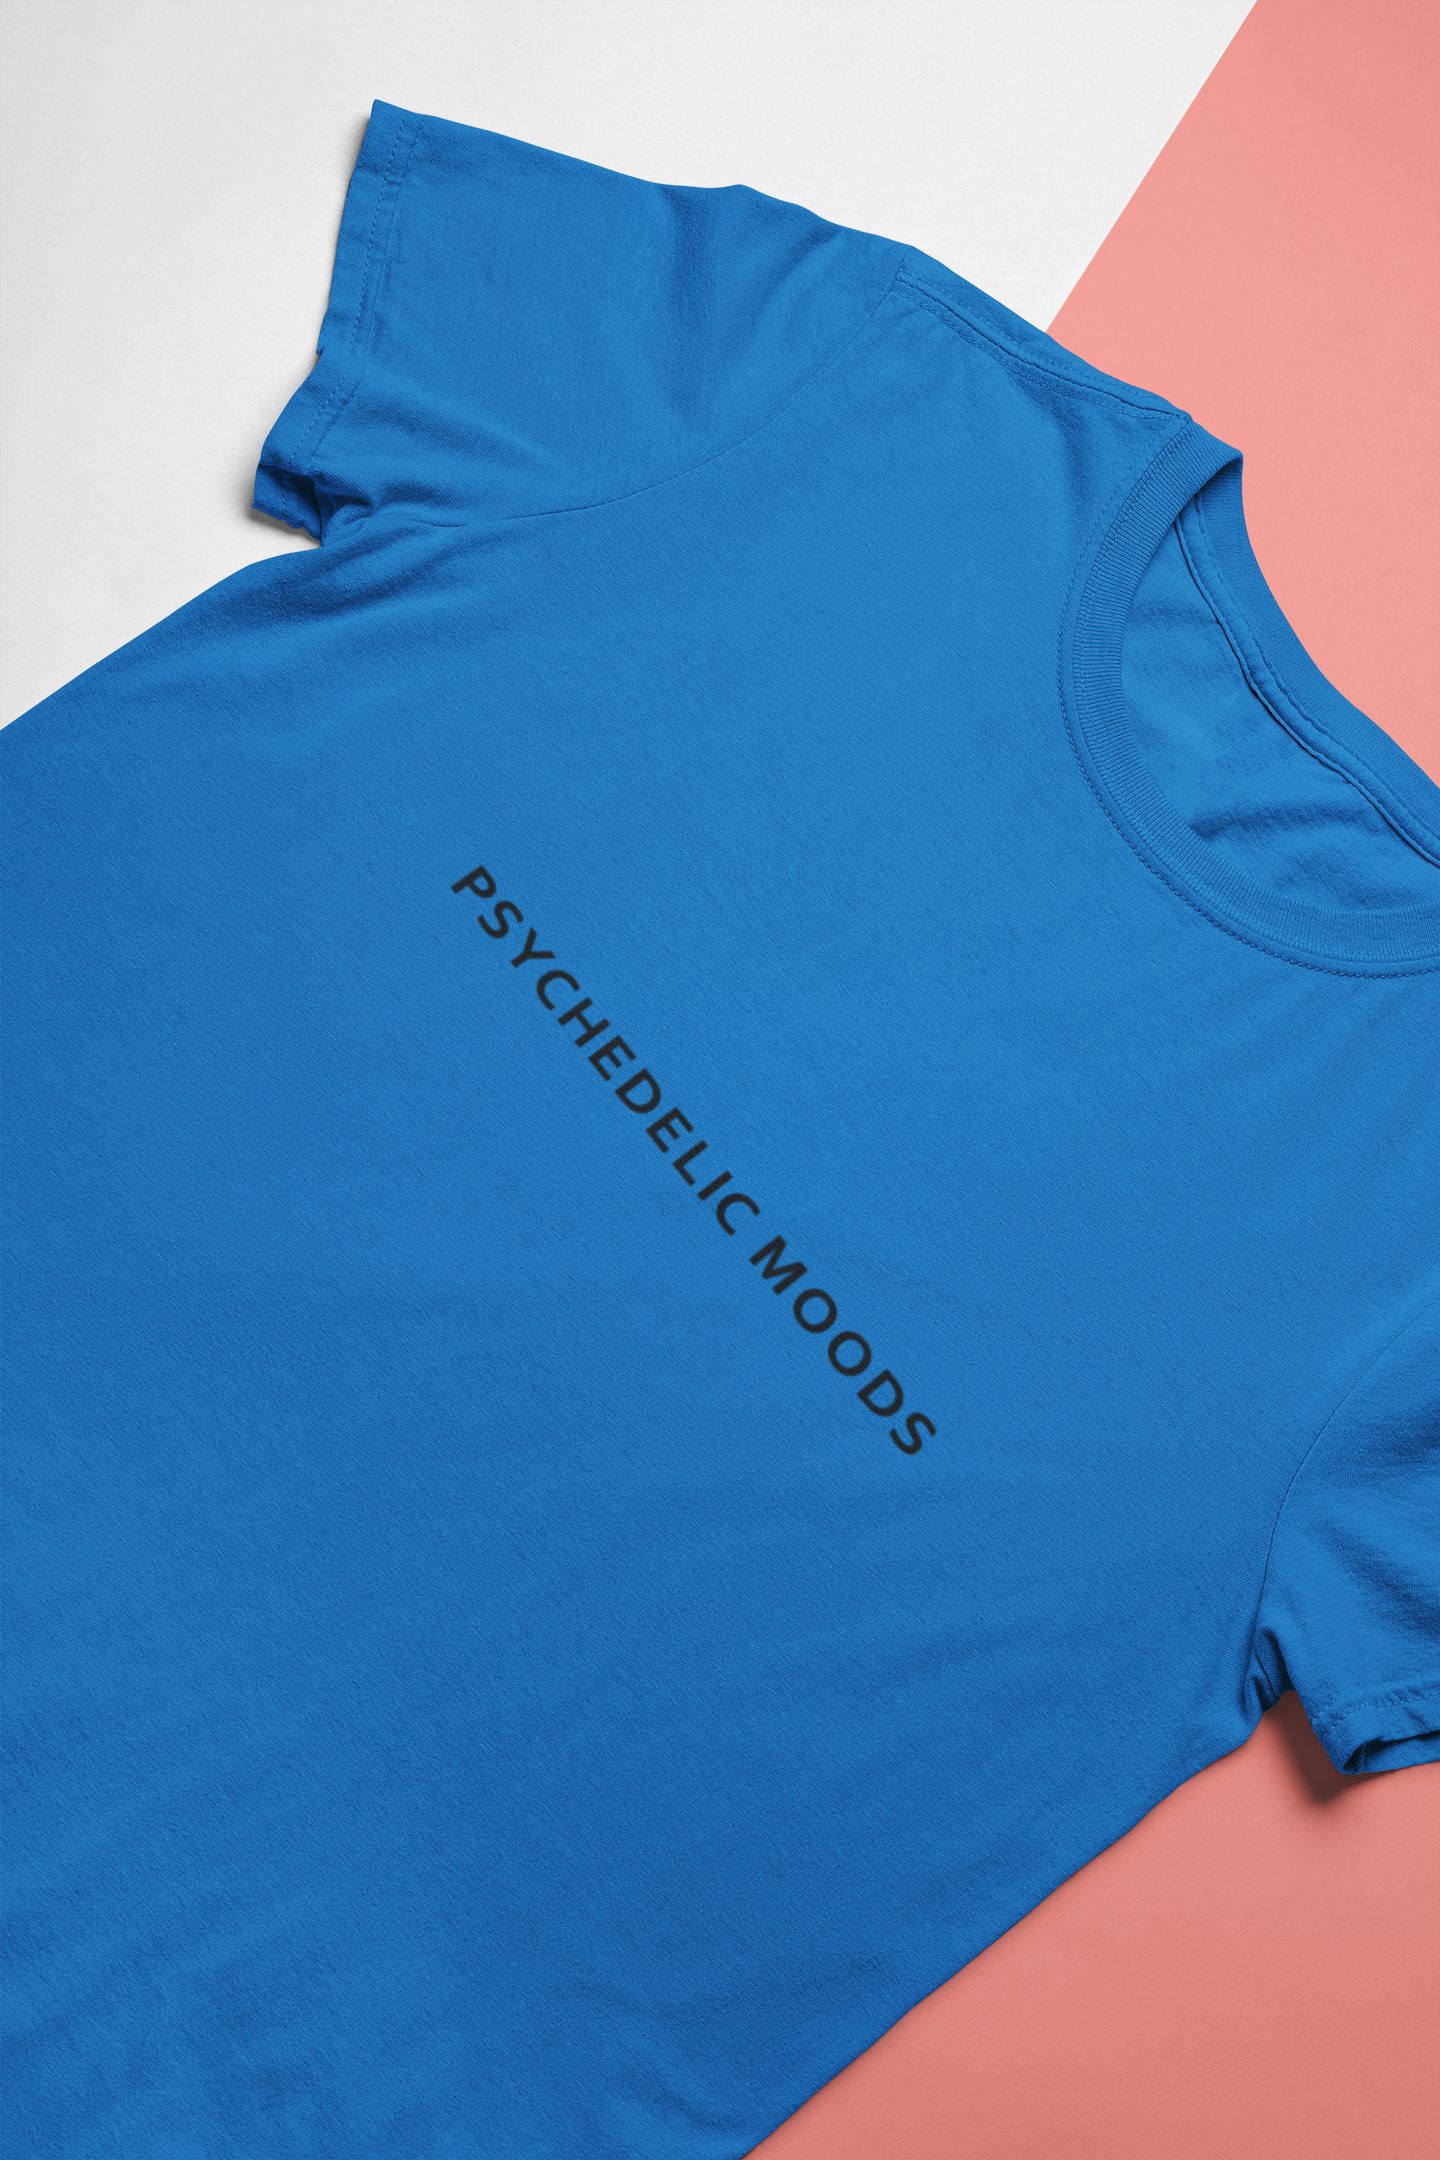 Psychedelic Moods Minimal Mens Half Sleeves T-shirt- FunkyTeesClub